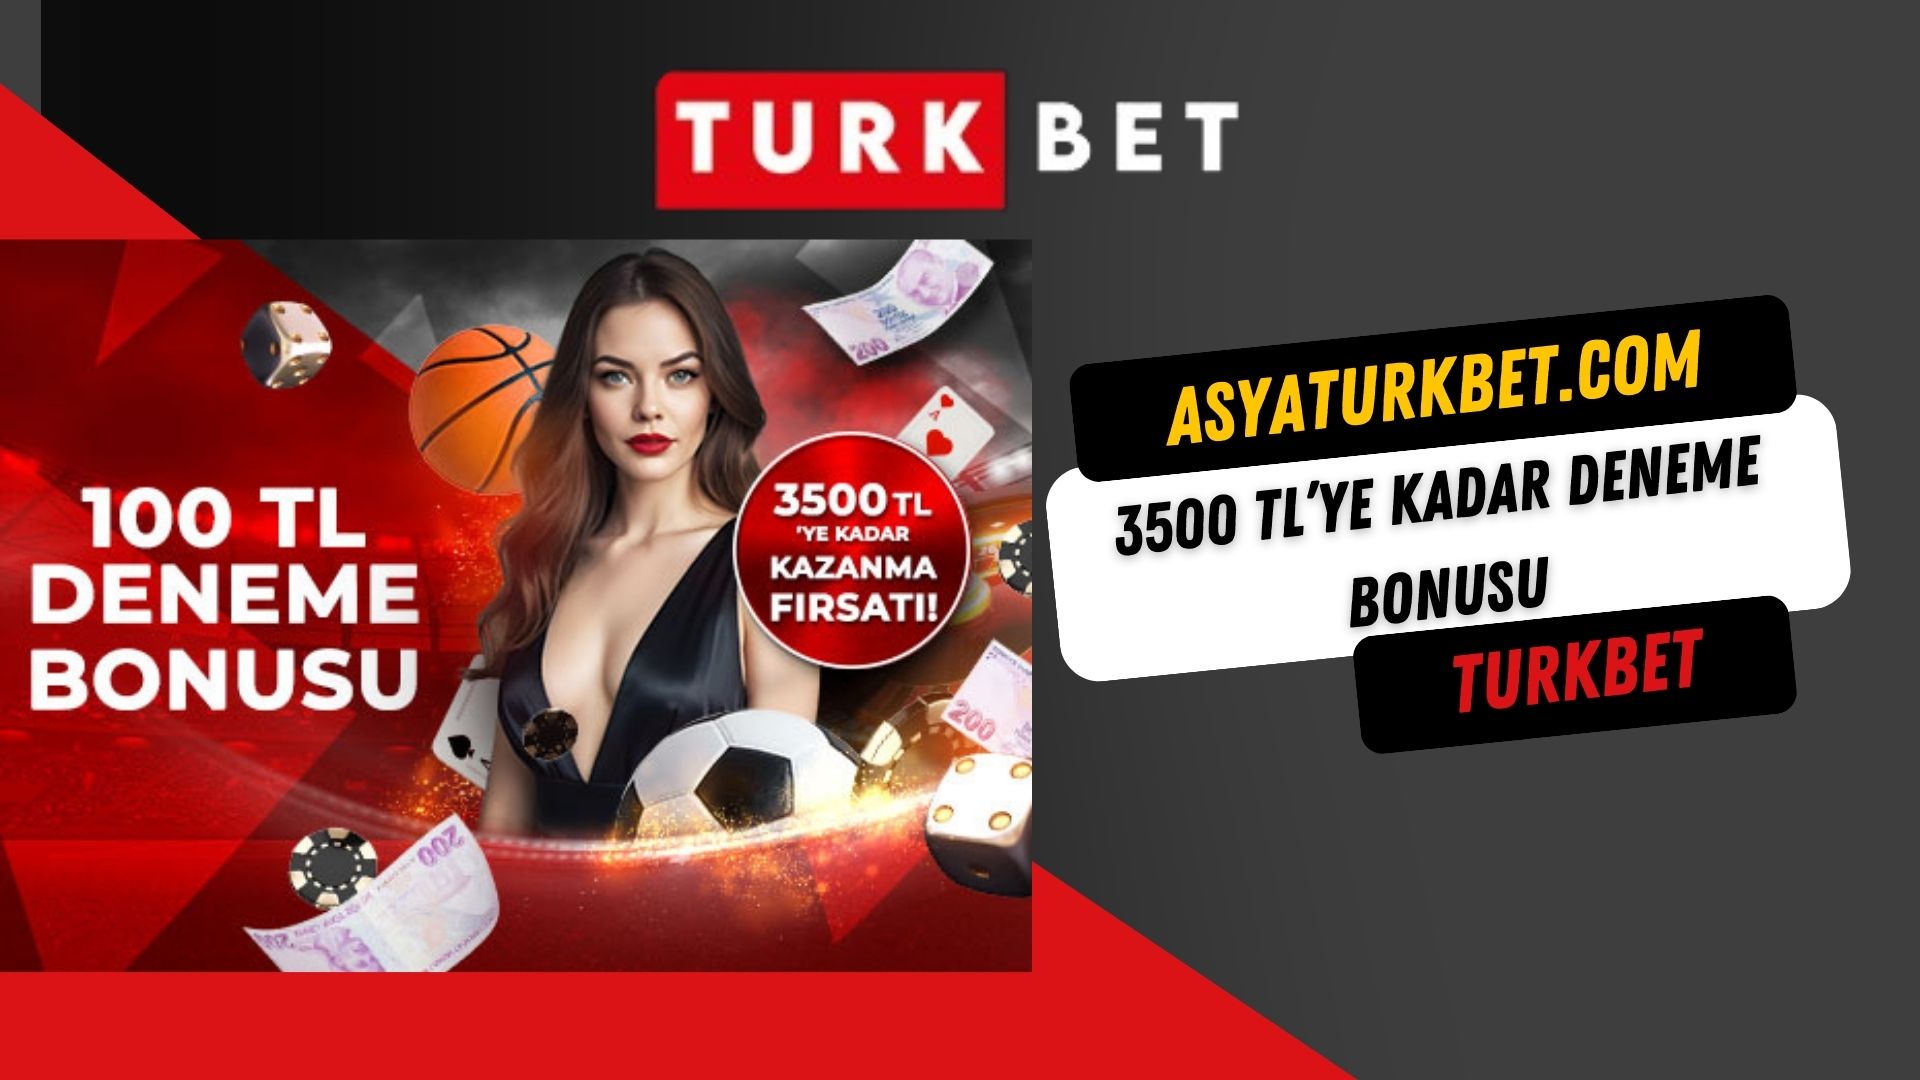 Turkbet 3500 TL’ye Kadar Deneme Bonusu